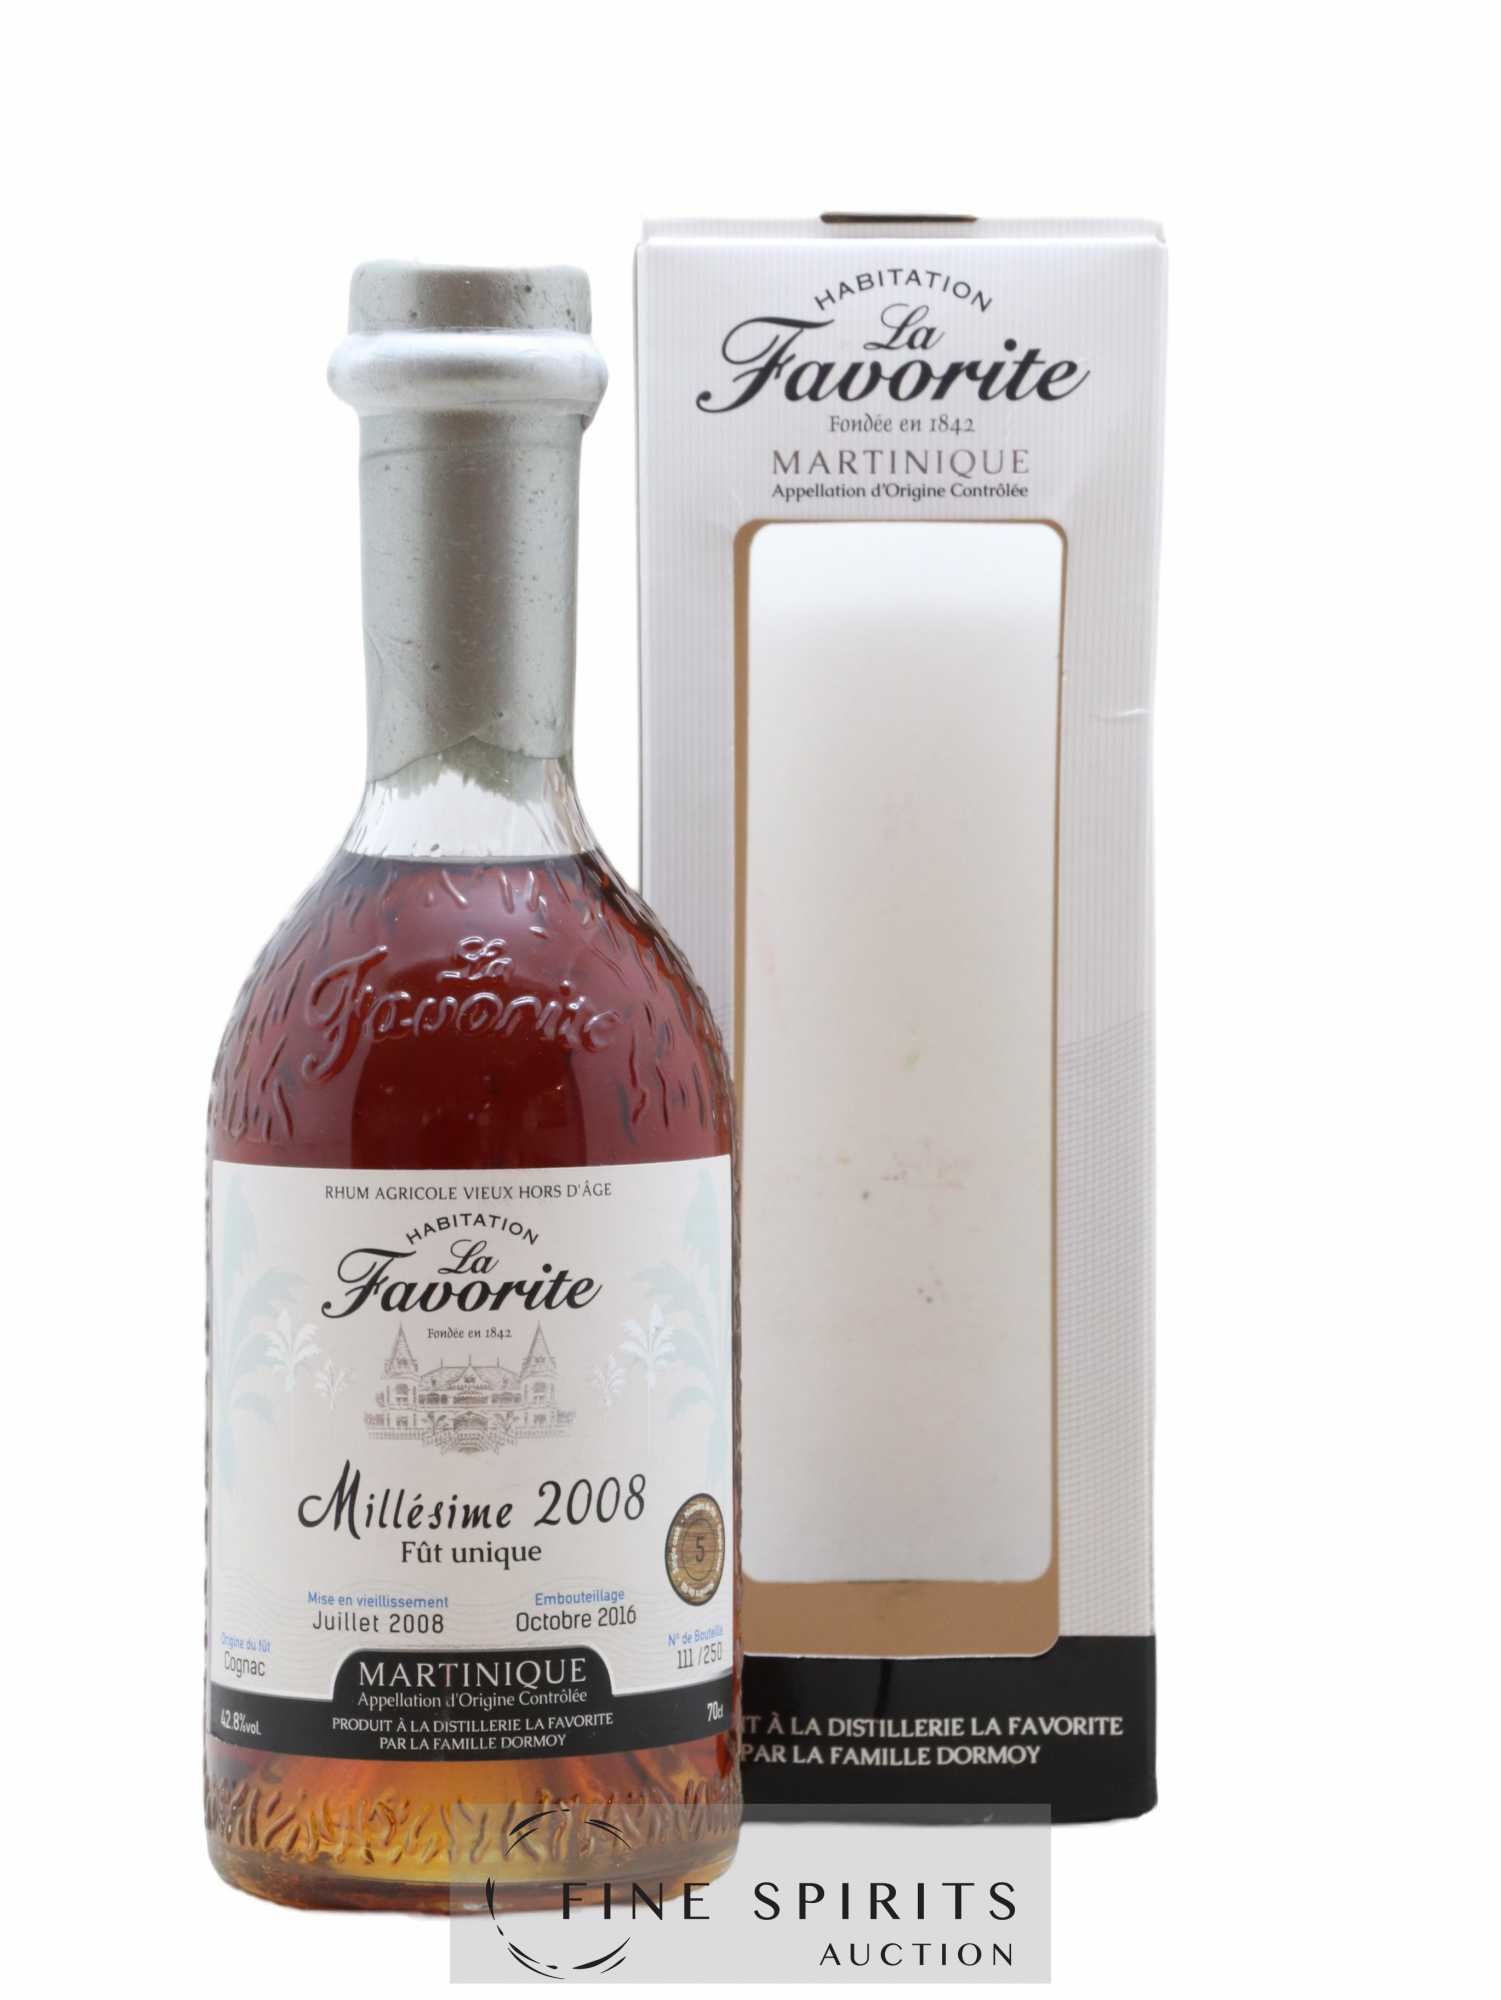 La Favorite 2008 Of. Cognac Single Cask n°5 - One of 250 - bottled 2016